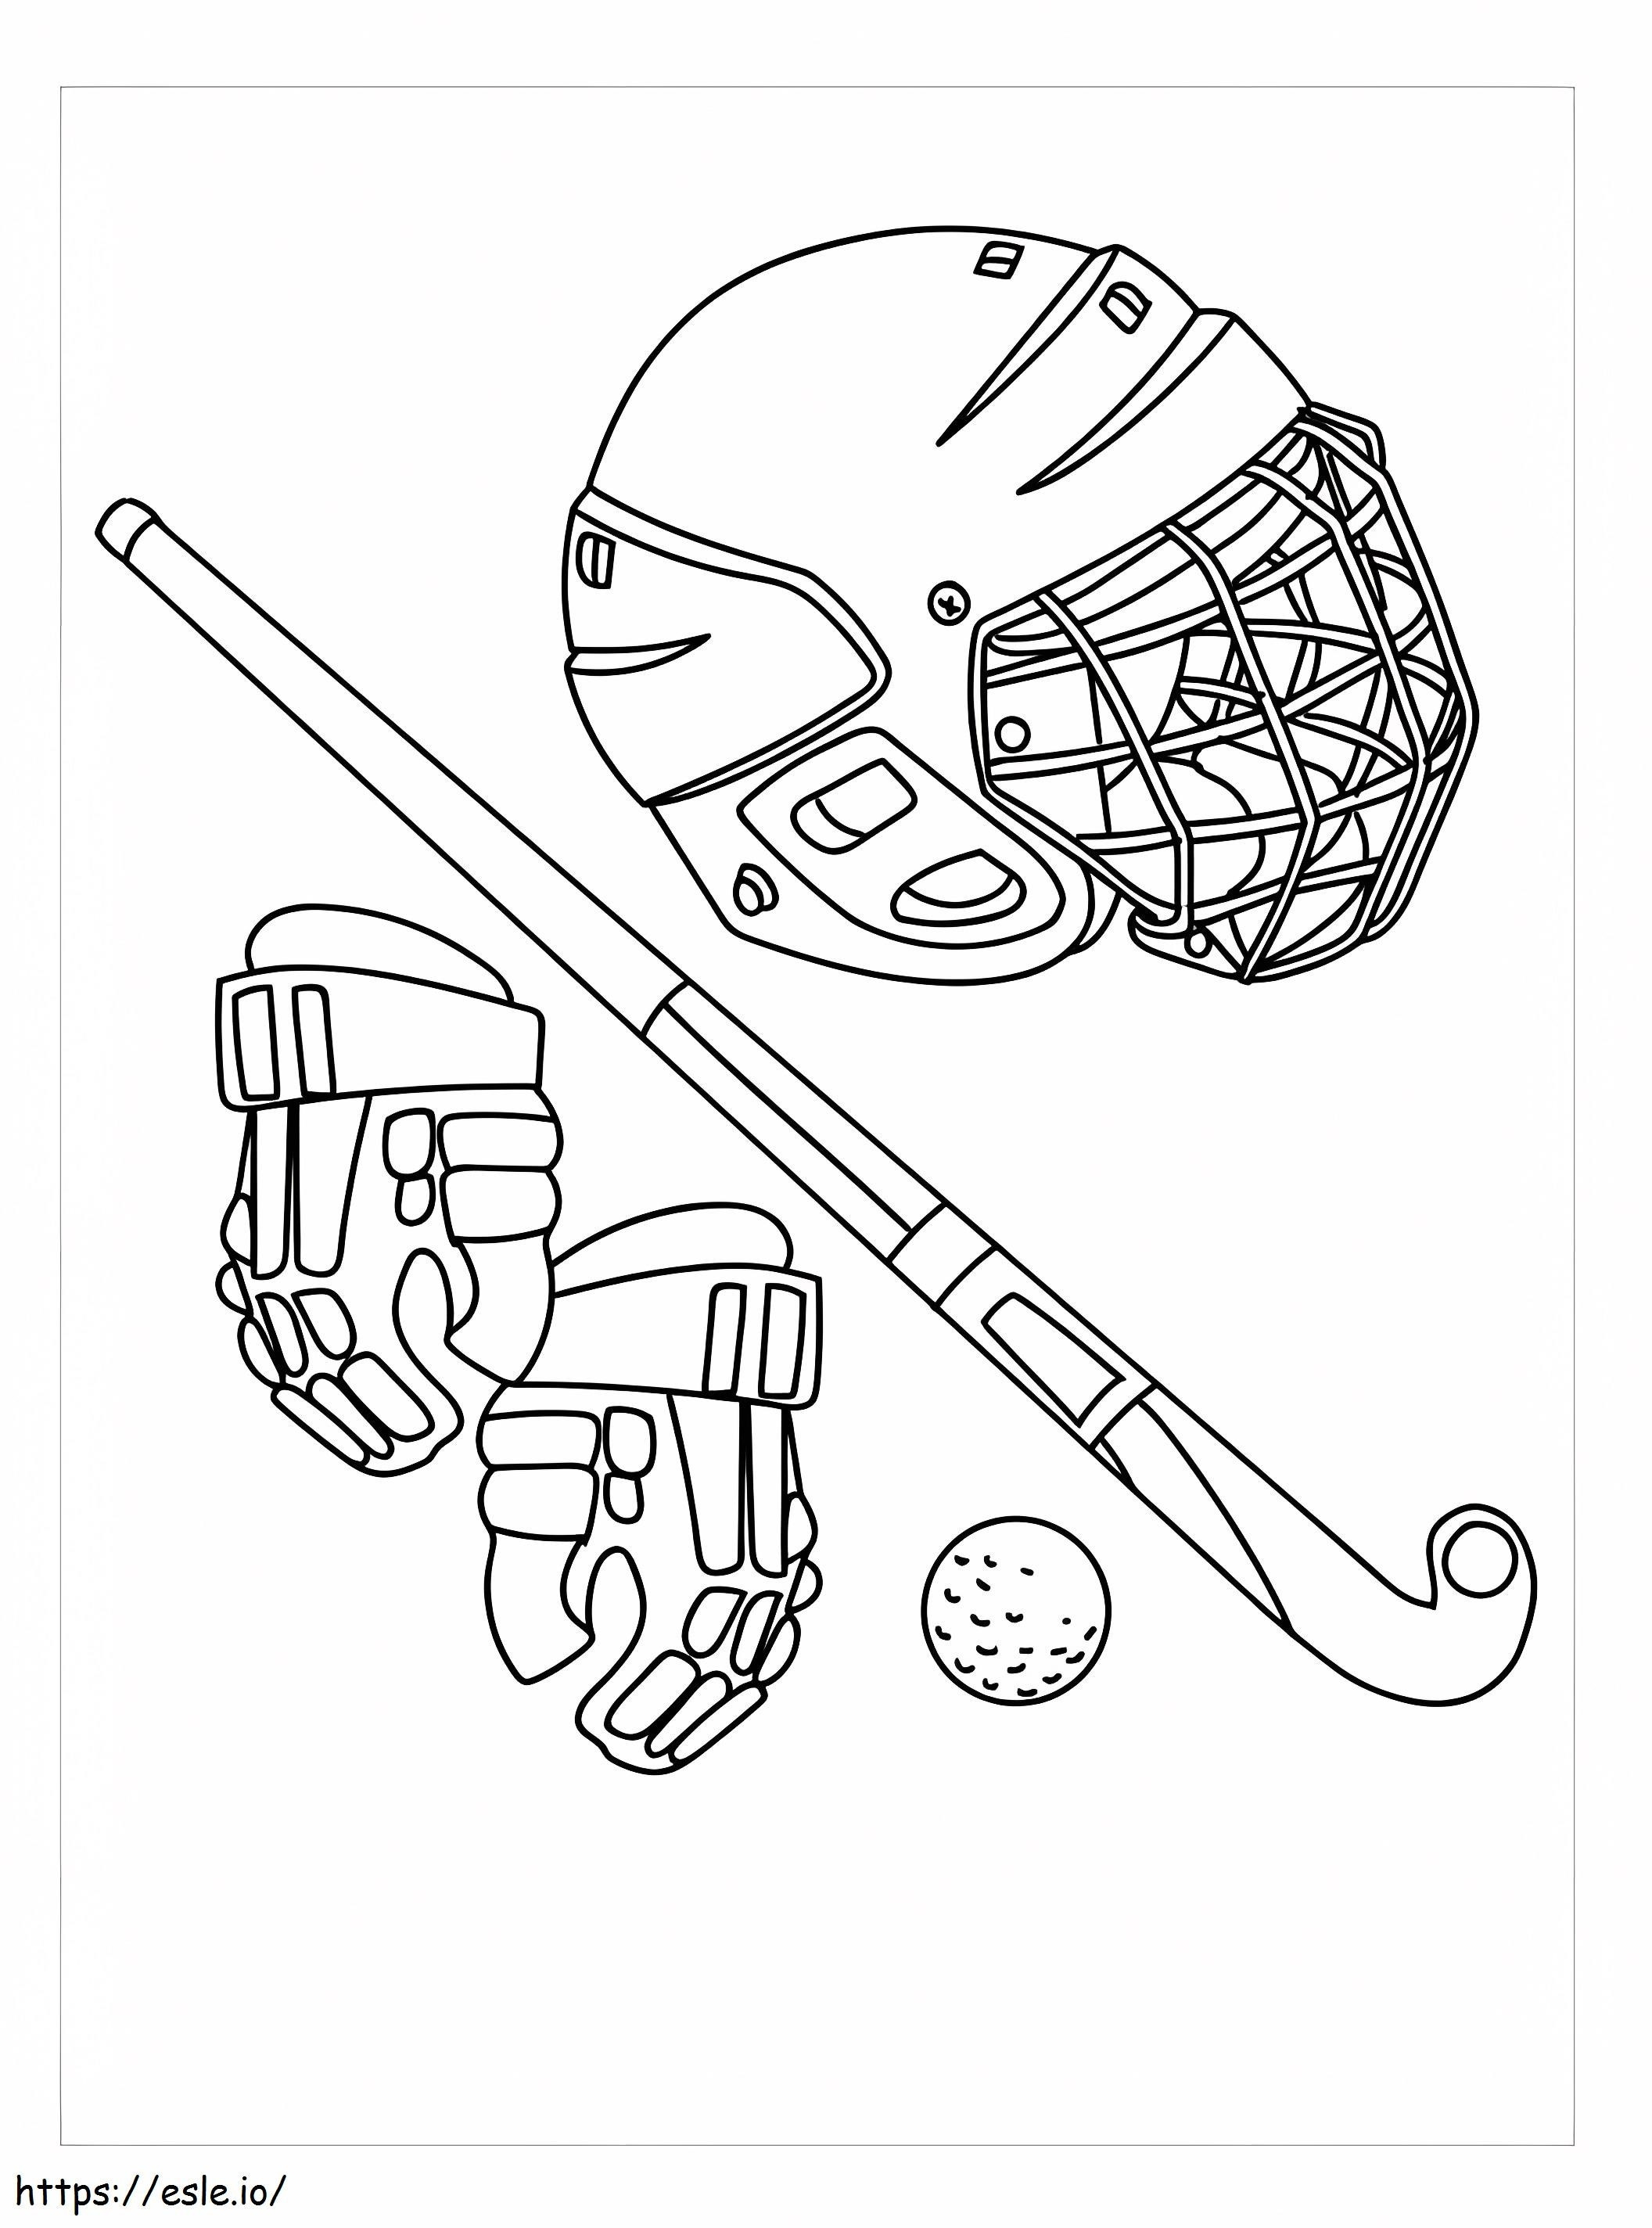 Narzędzia do gry w hokeja kolorowanka